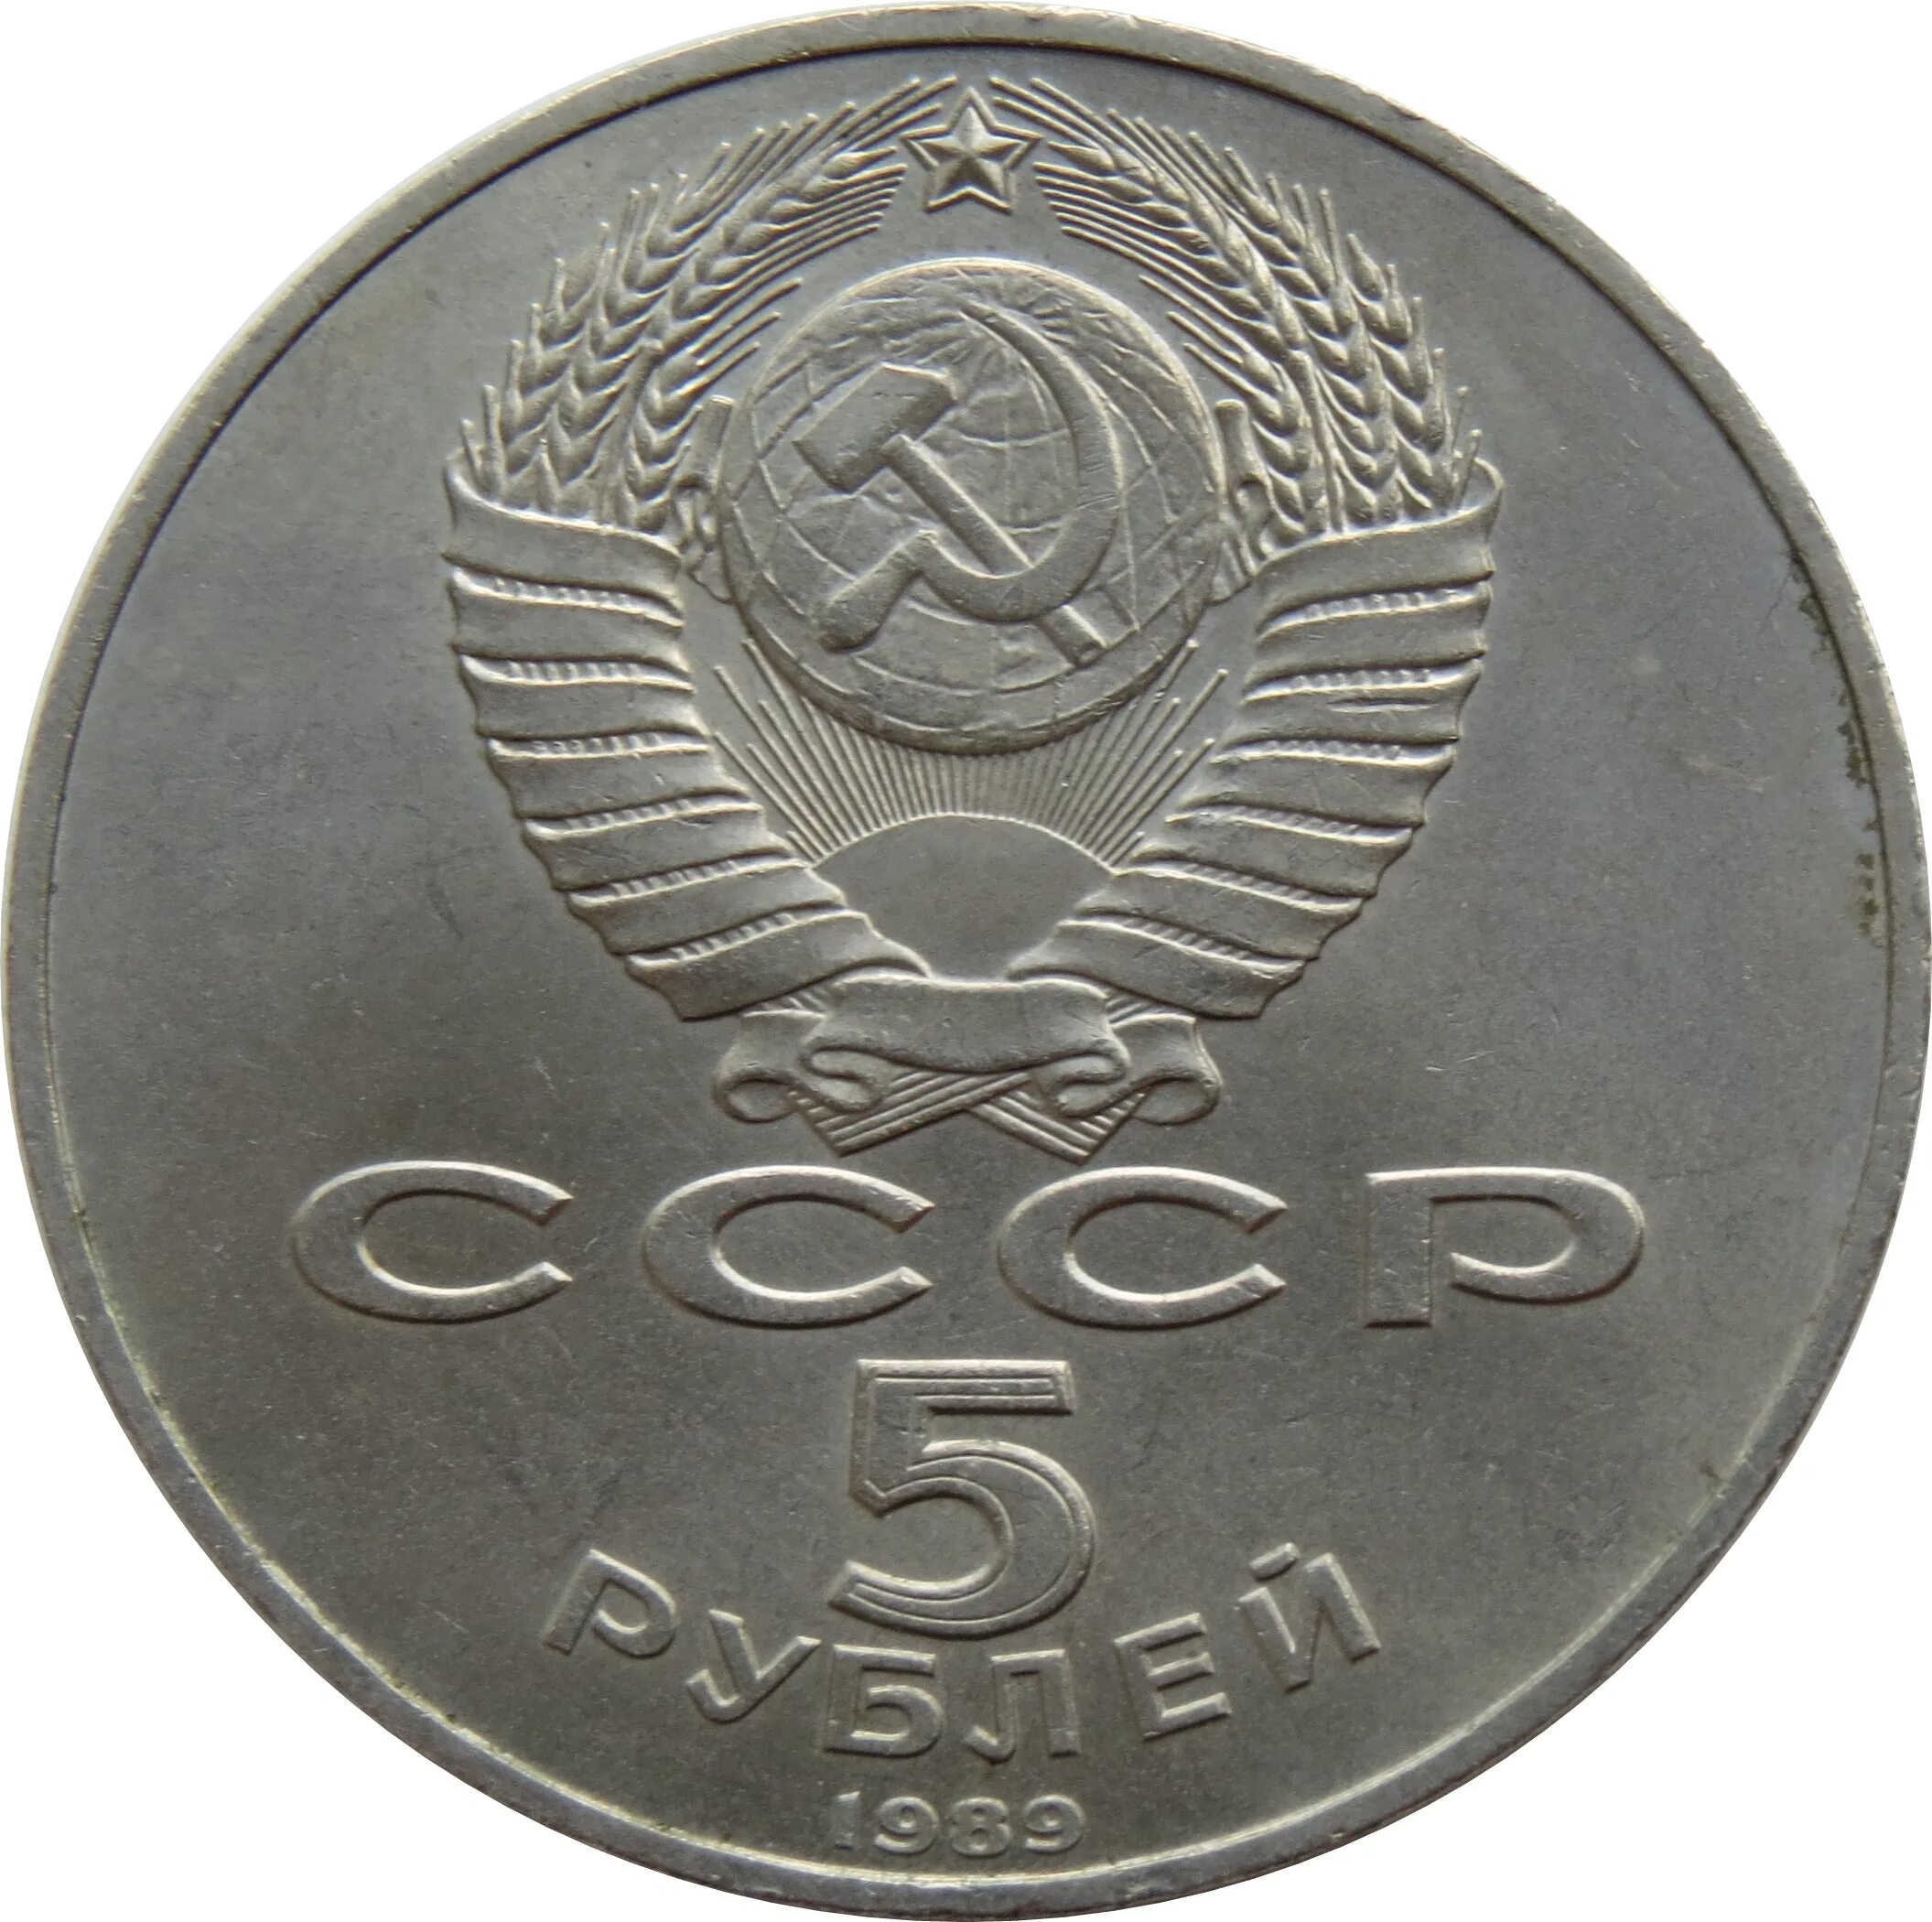 Монеты СССР Аверс Аверс. Монета 1 рубль 1990 года. 1 Рубль СССР 1990. Монета 1 рубль СССР.